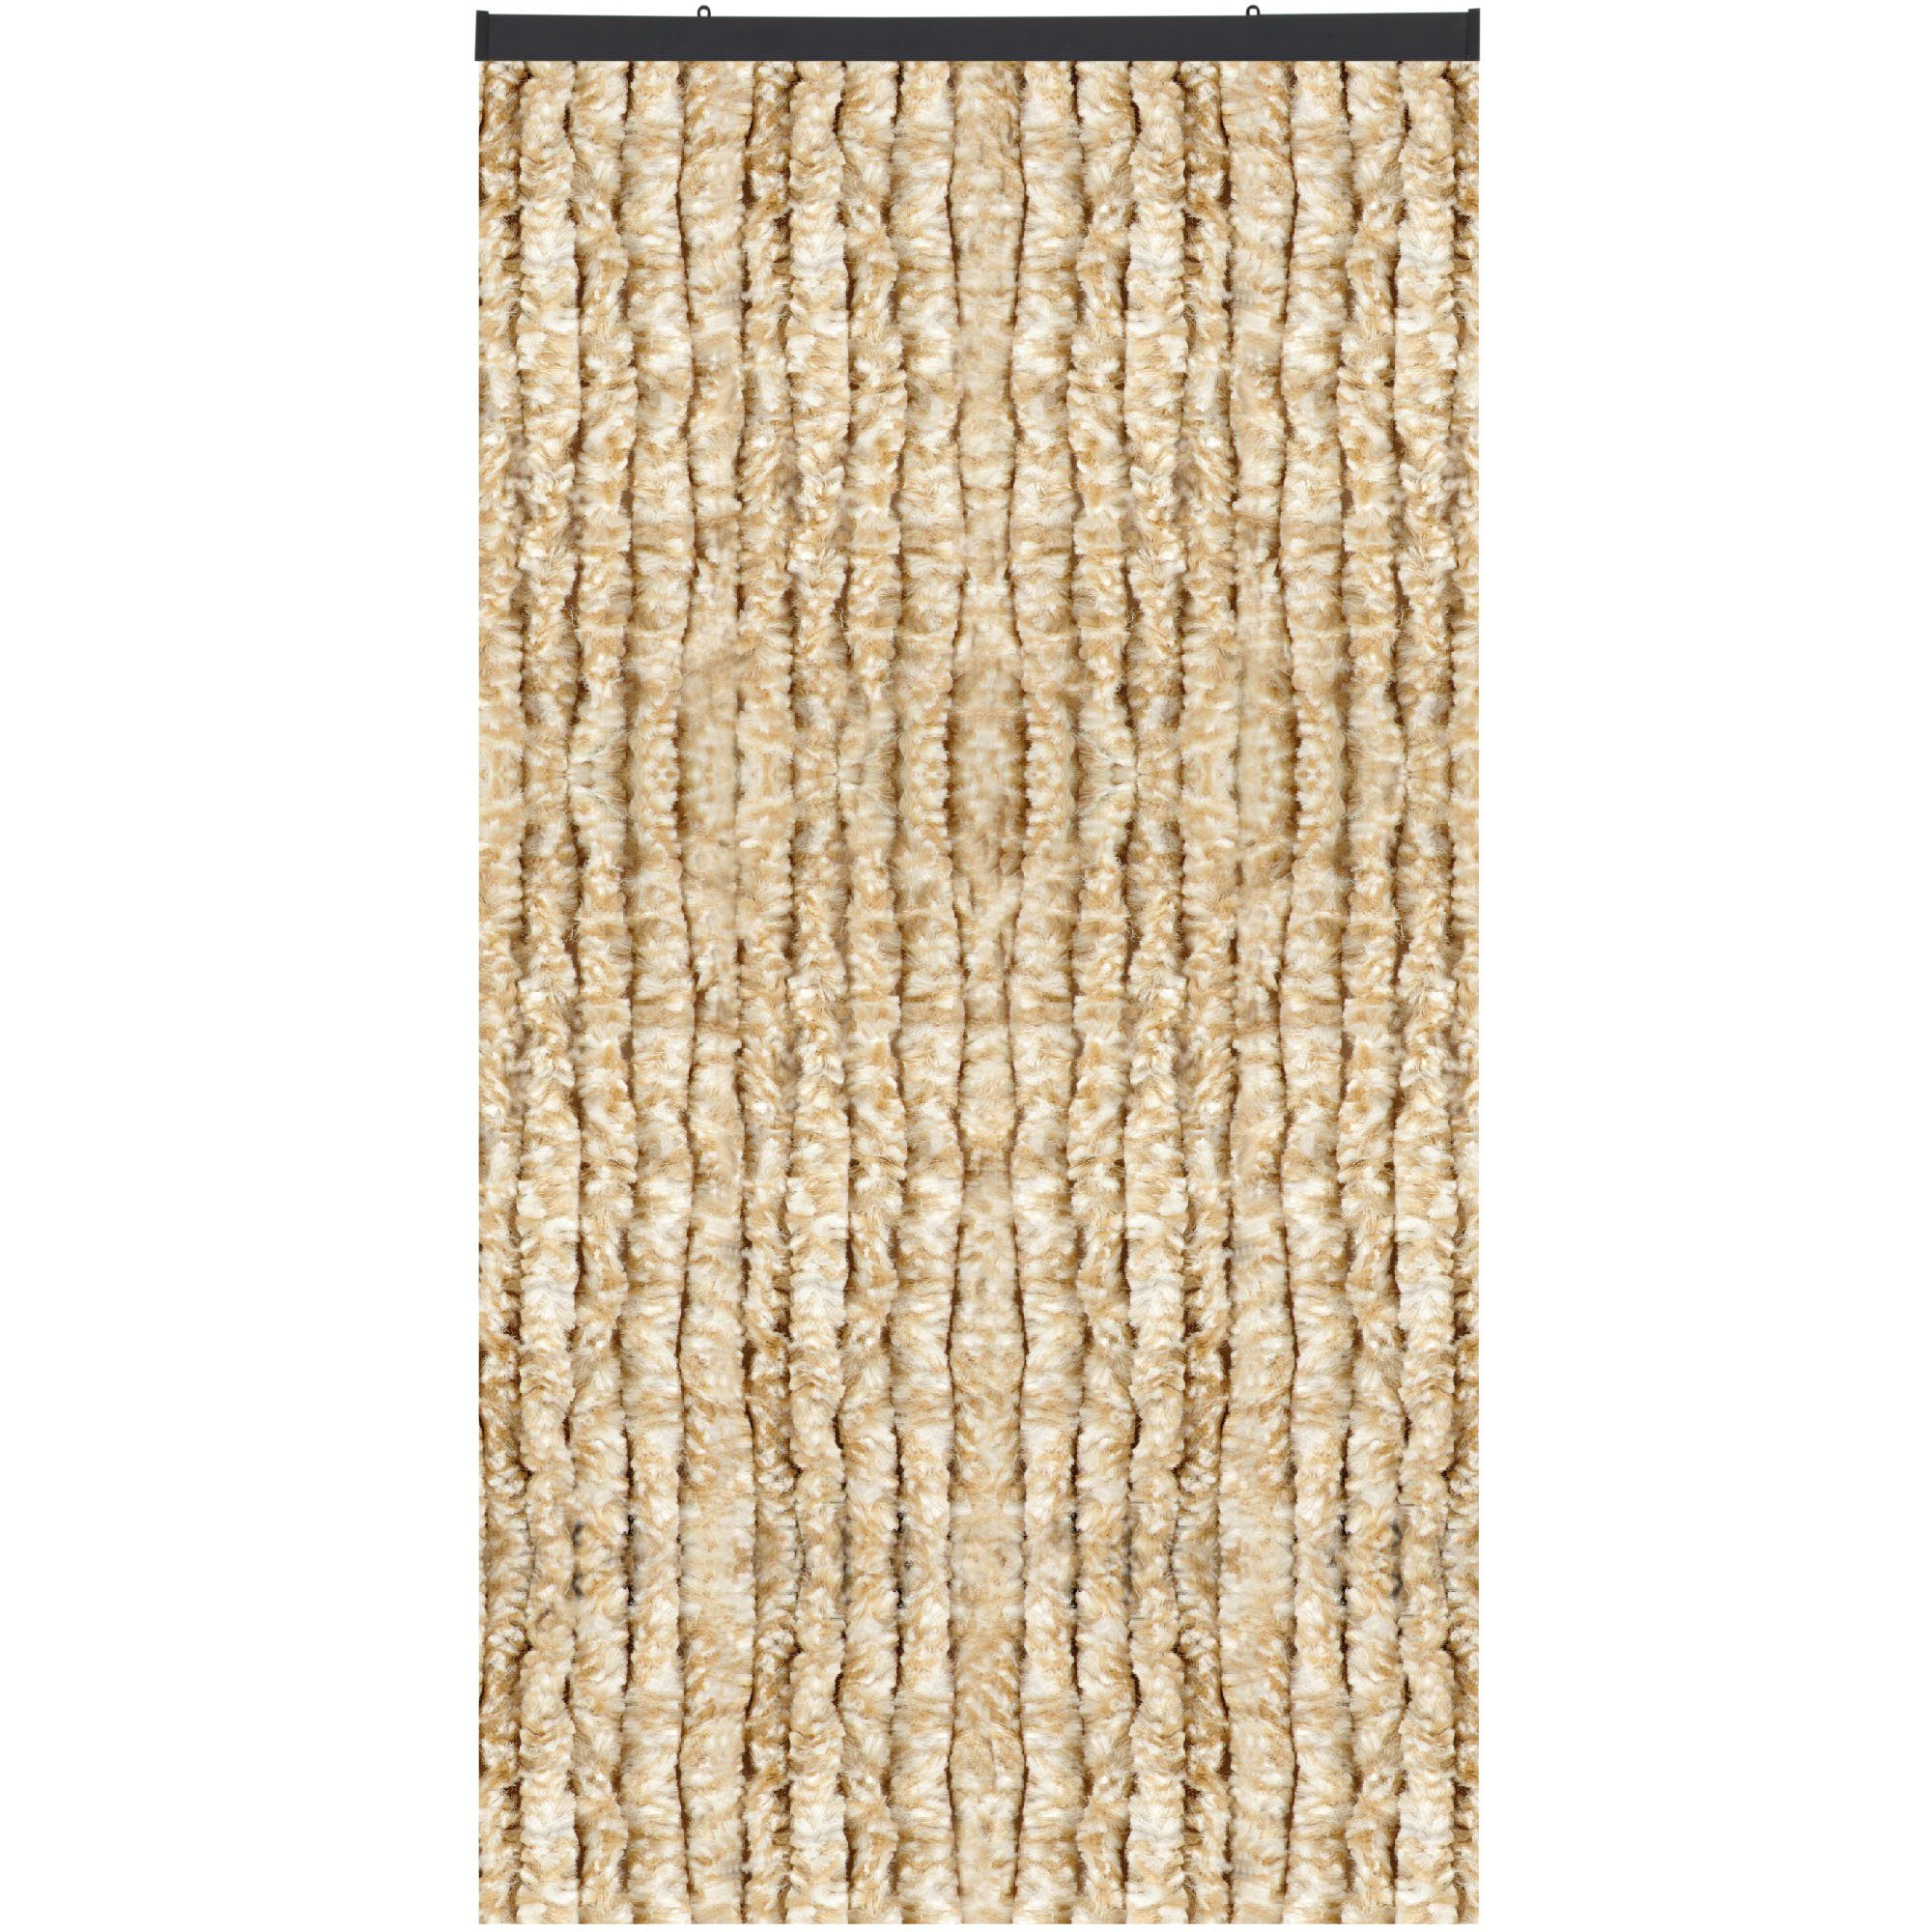 Türvorhang Flauschi, Arsvita, Ösen (1 St), Flauschvorhang 160x185 cm in Meliert beige - weiß, viele Farben Meliert Beige/Weiß